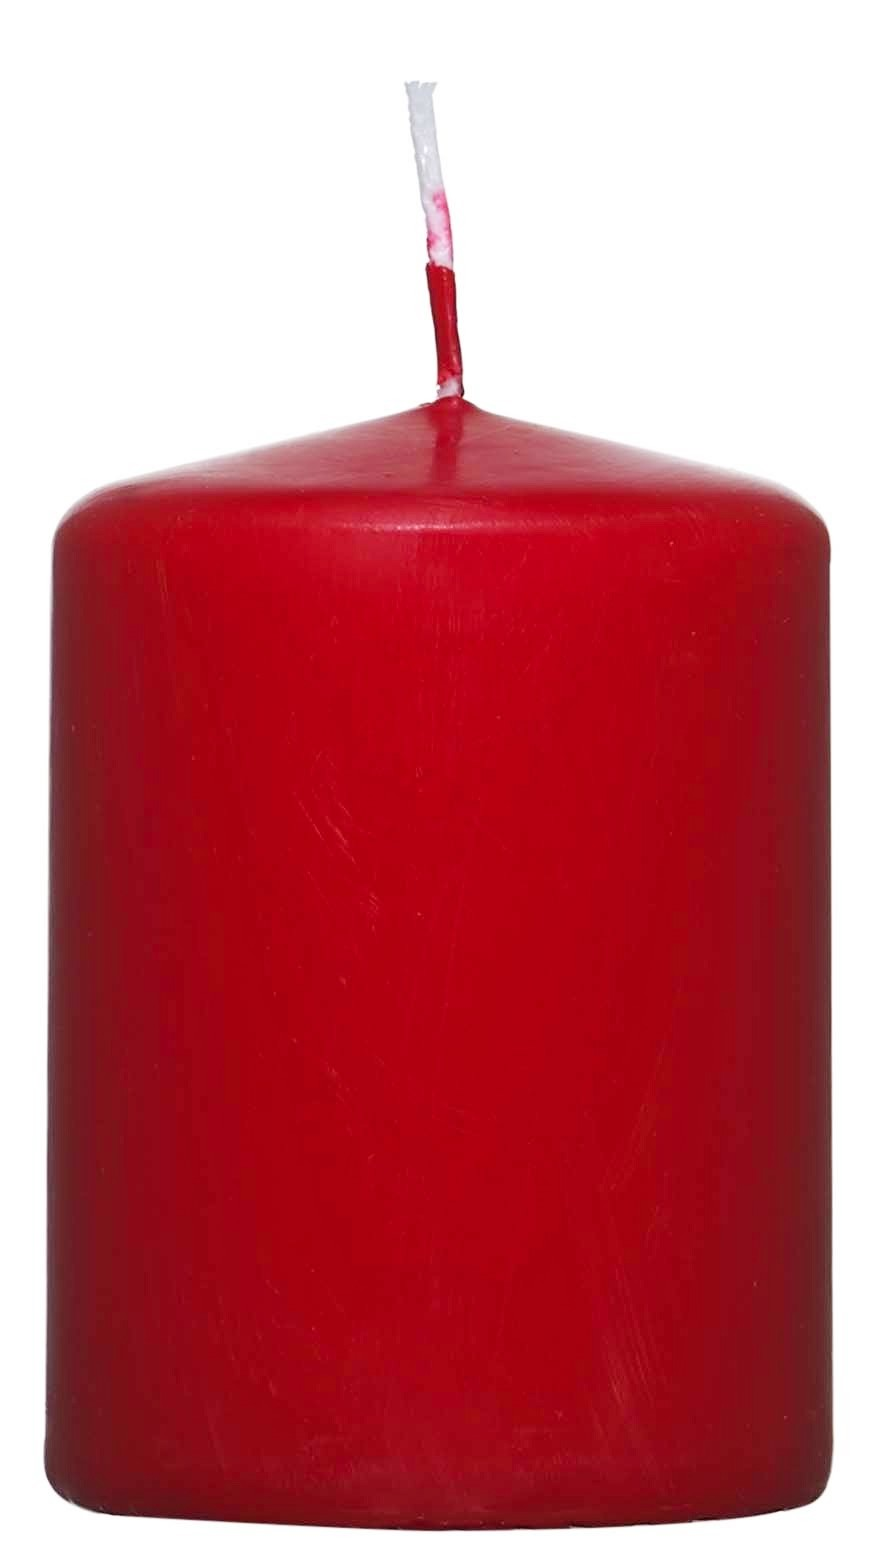 Valcová sviečka červená, 8 cm